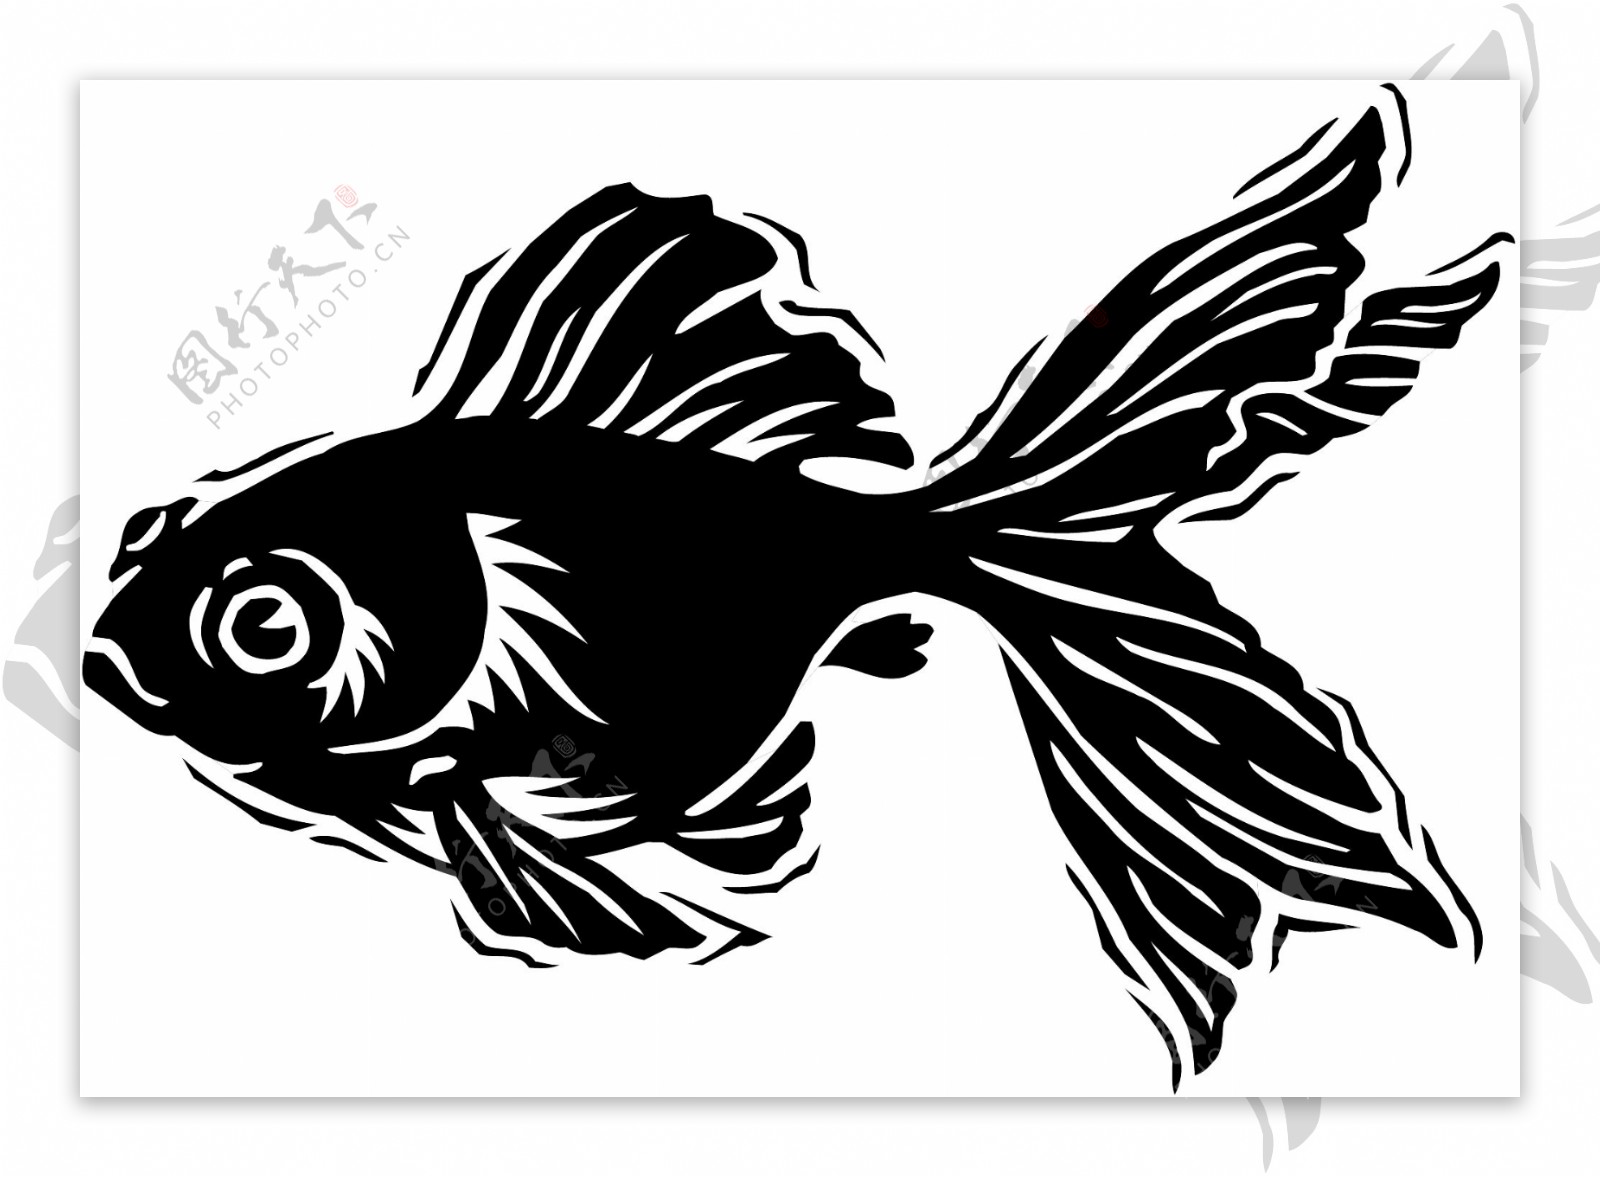 五彩小鱼水生动物矢量素材EPS格式0228